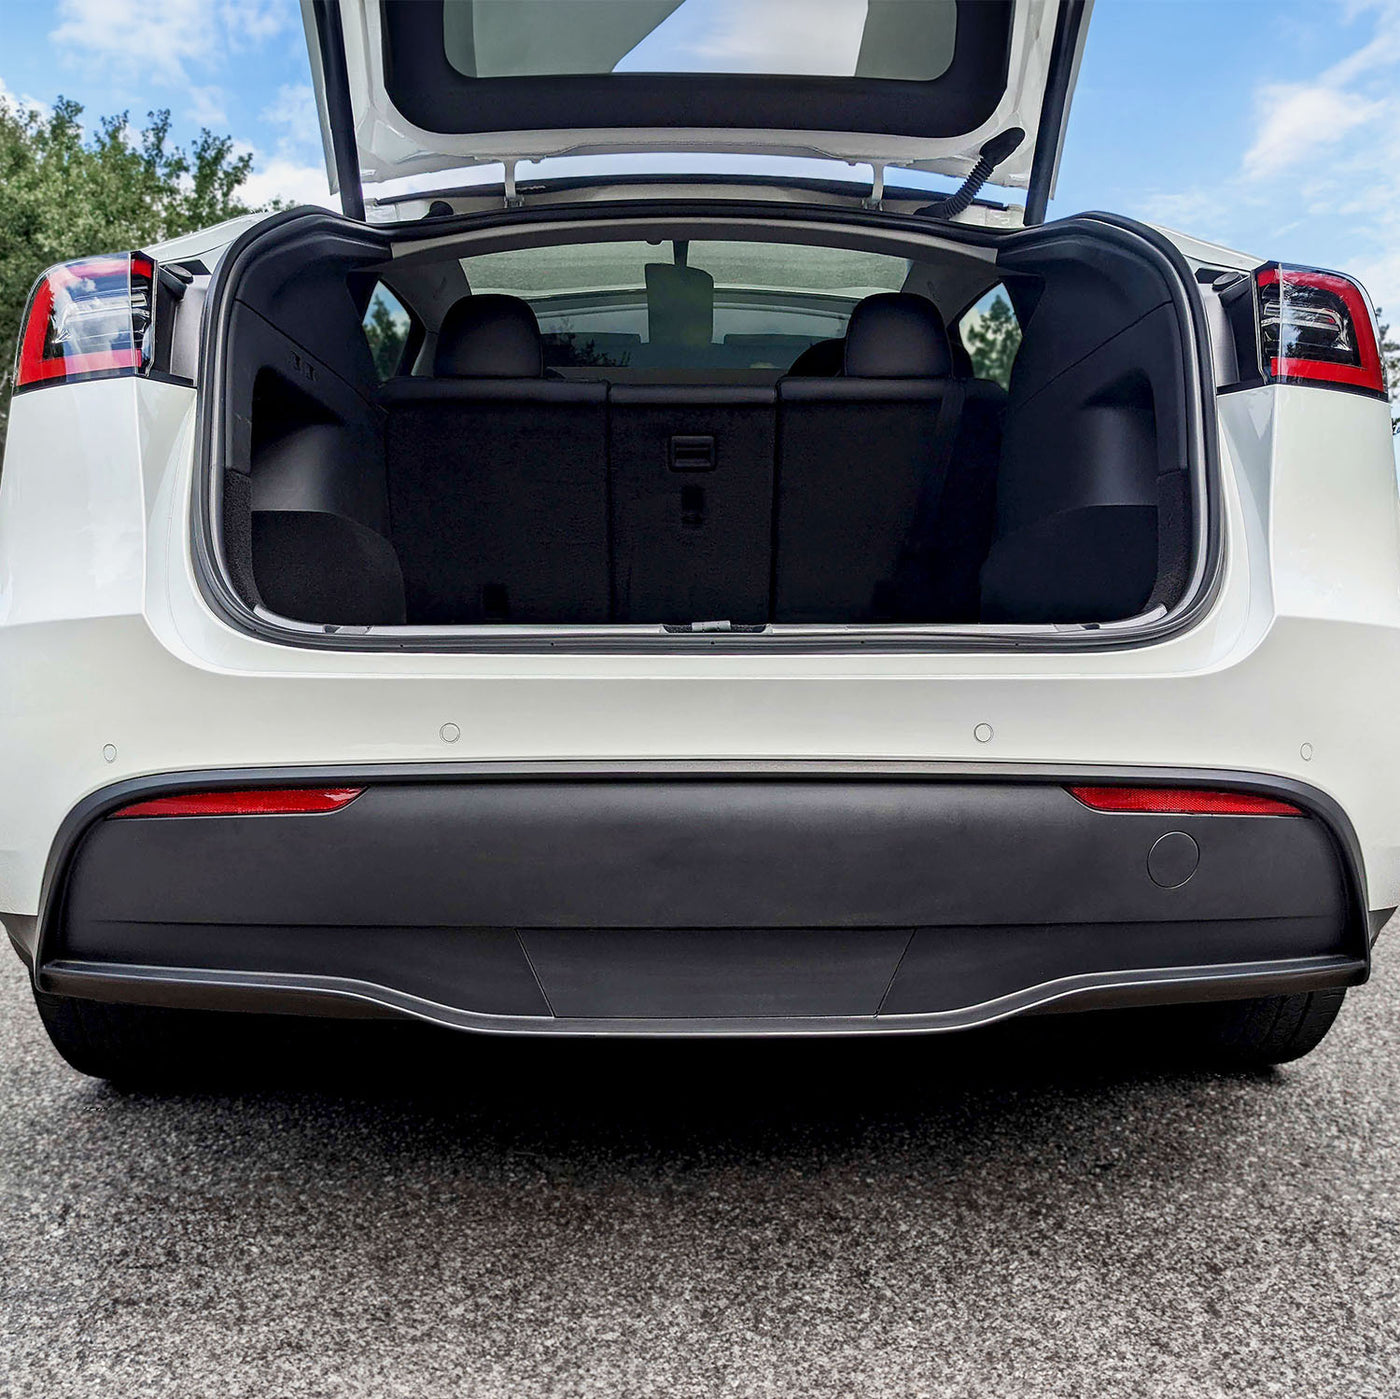 model y trunk bumper protector #ultrasonic-sensors-on-bumper_has-sensors